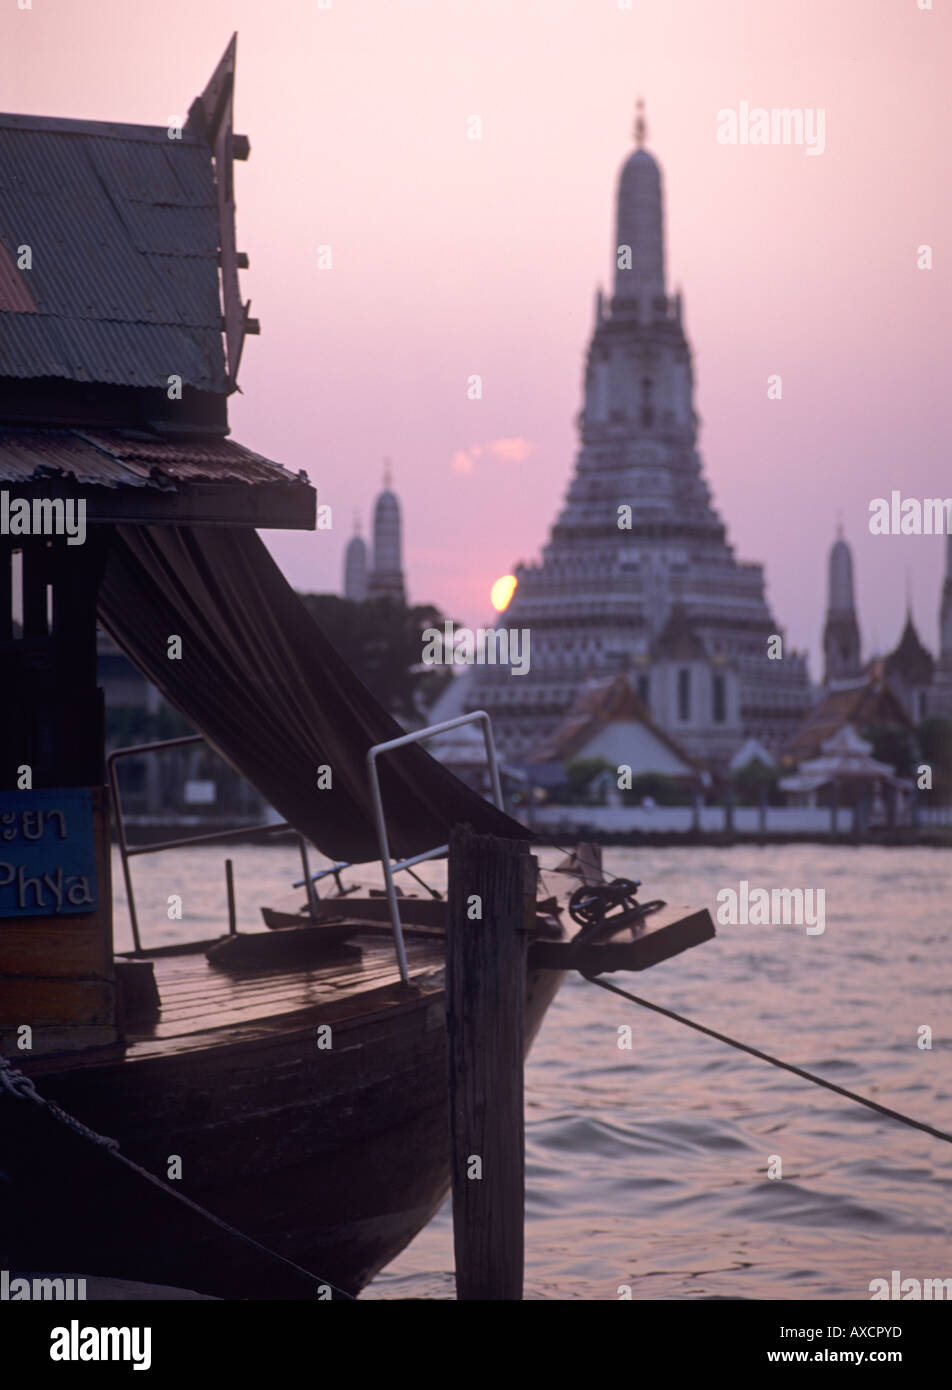 Bateau sur la rivière Chao Phraya à Bangkok Thaïlande Wat Arun Banque D'Images